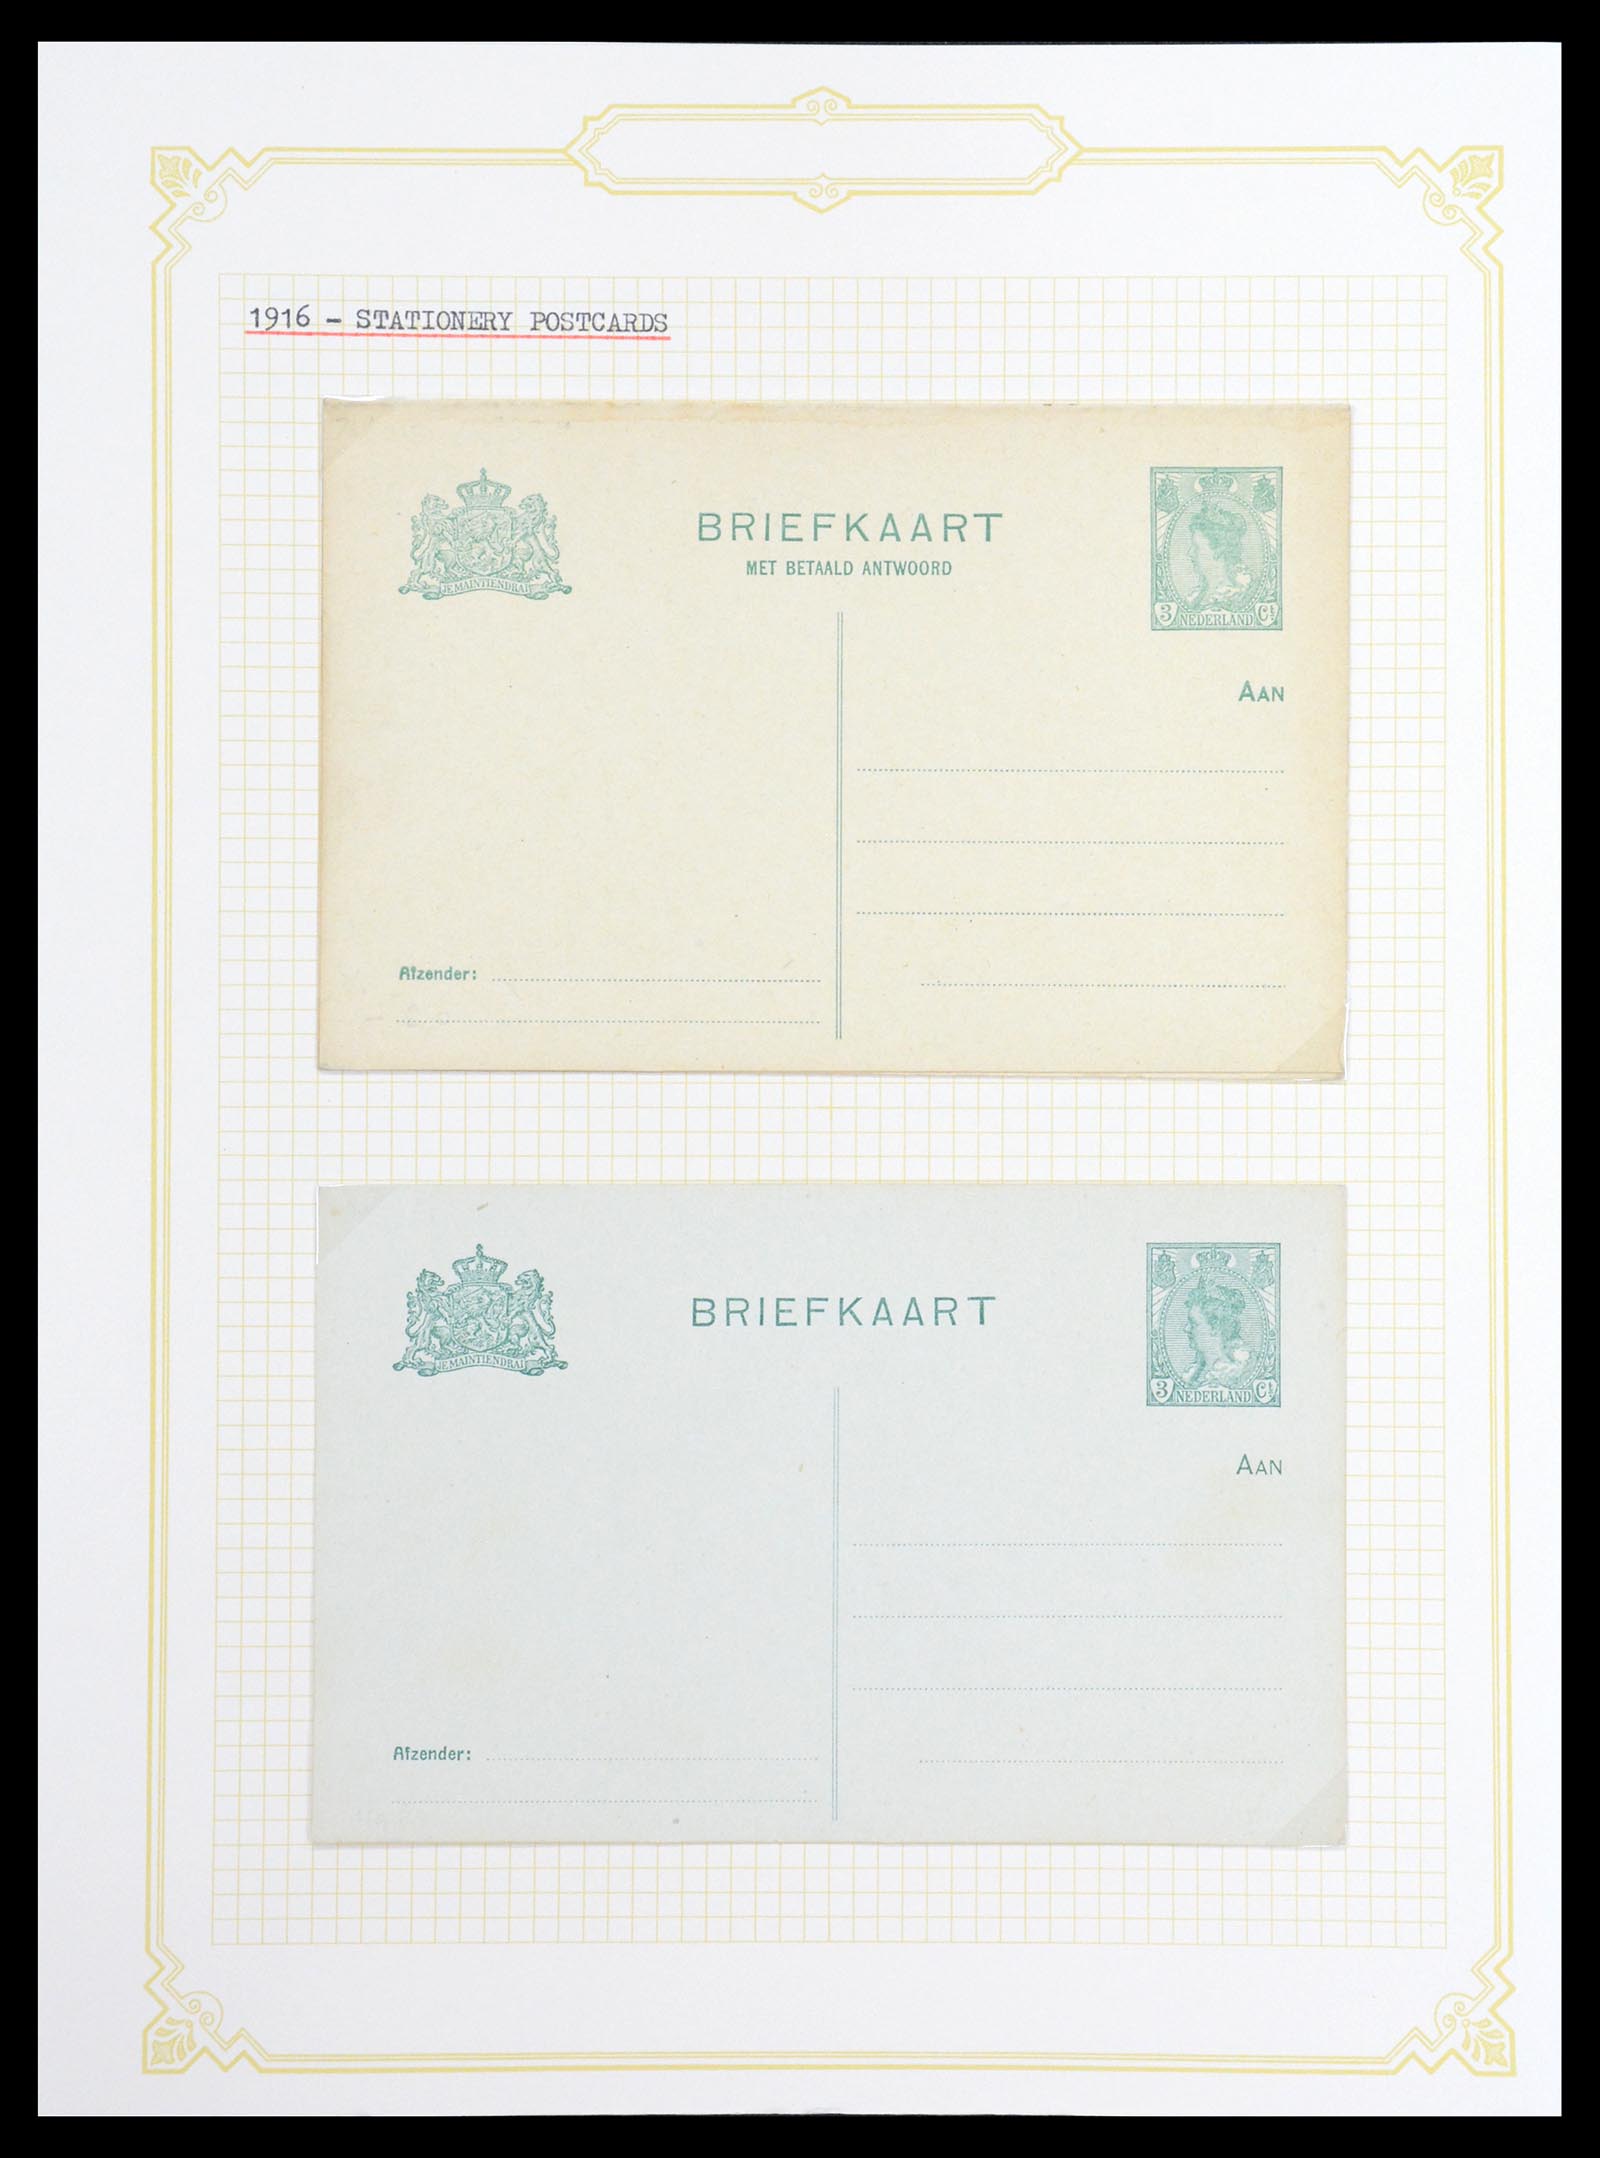 36600 037 - Stamp collection 36600 Nederland brieven 1899-1952.